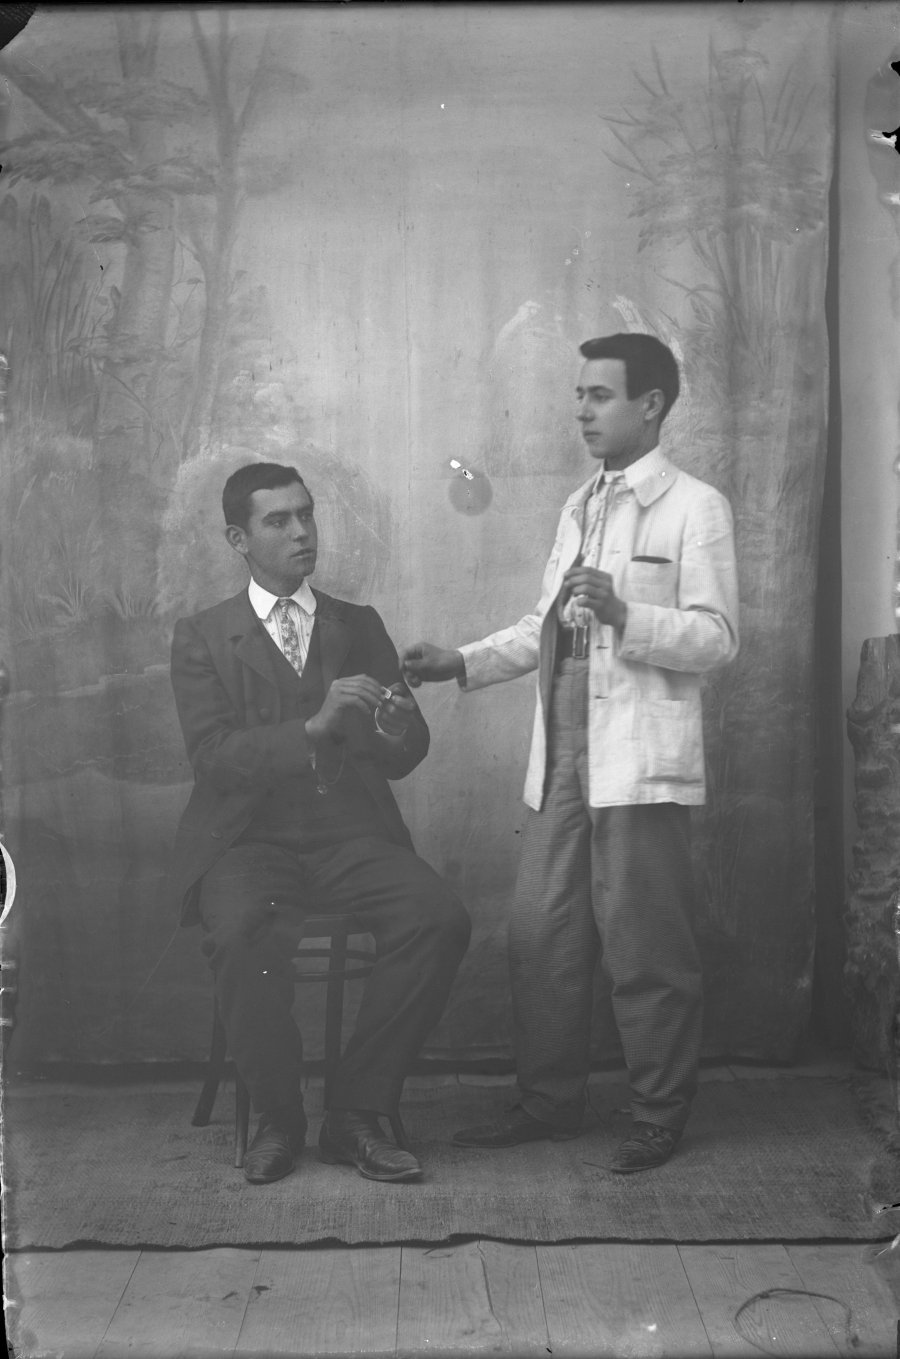 Retrato de estudio de dos hombres jóvenes simulando encender un puro